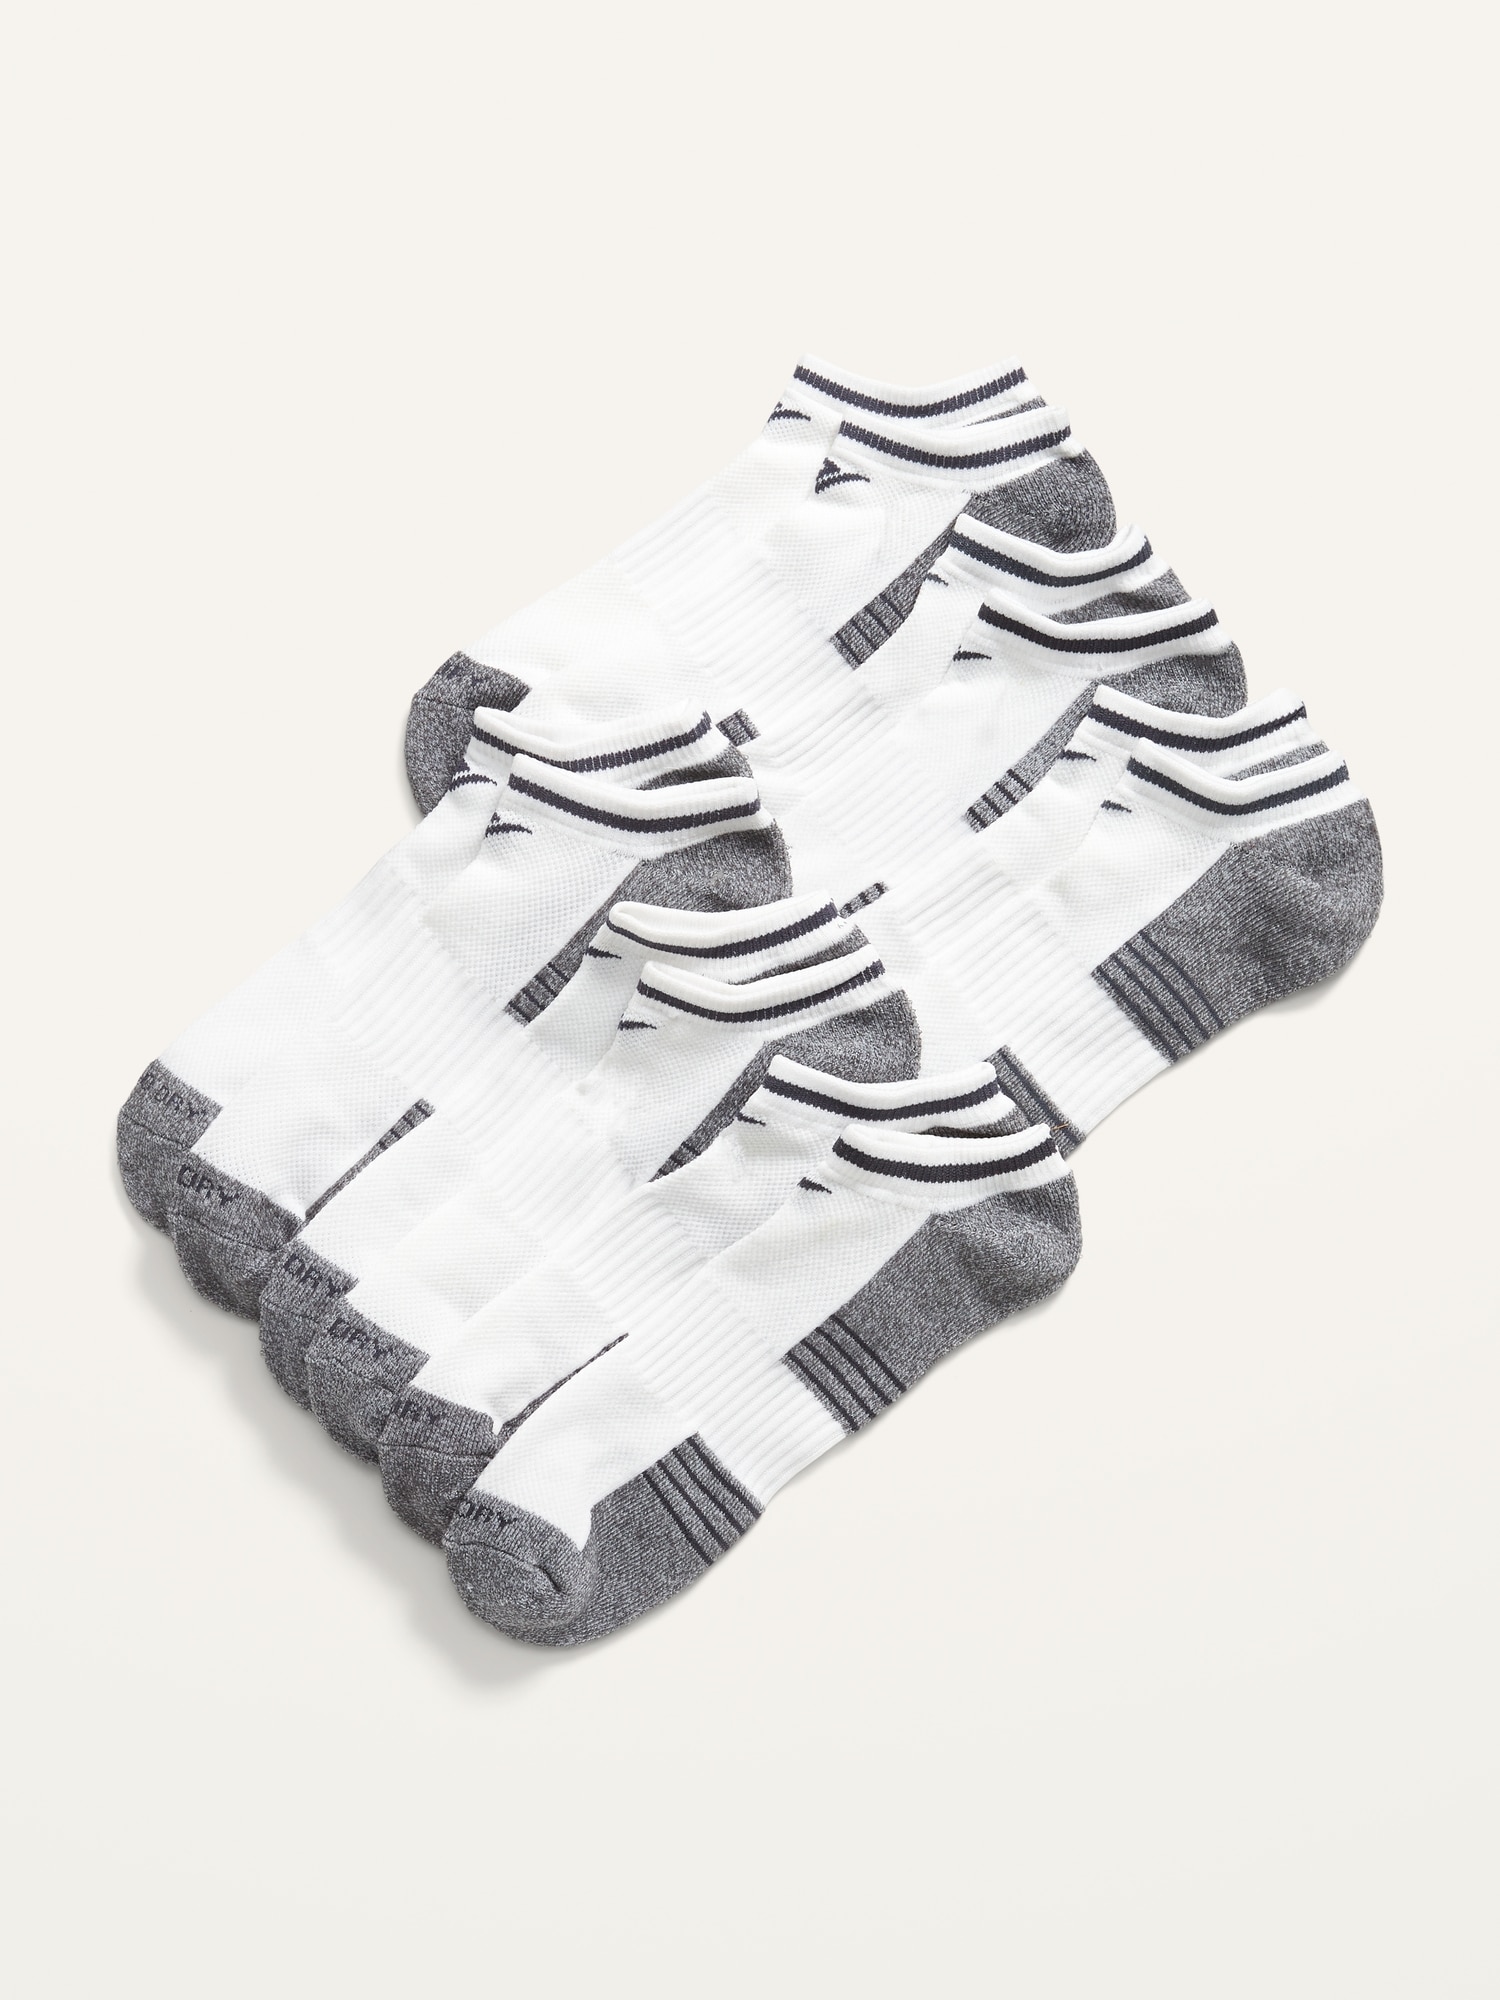 6-Pack Gender-Neutral Low-Cut Athletic Socks